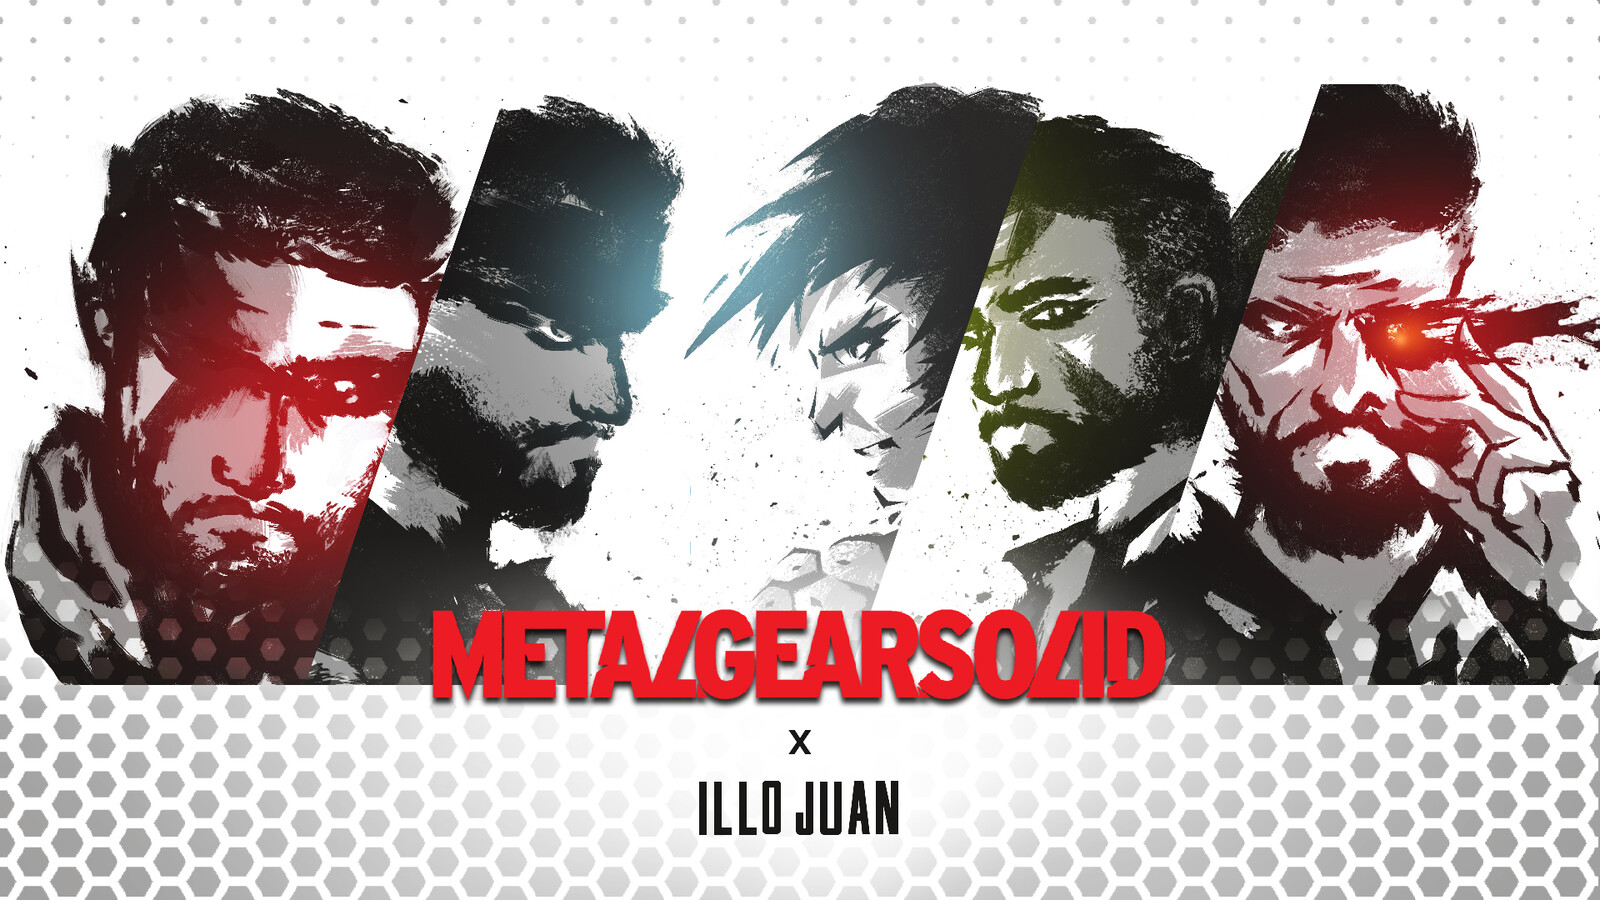 Illojuan x Metal Gear Solid | Illustration Series